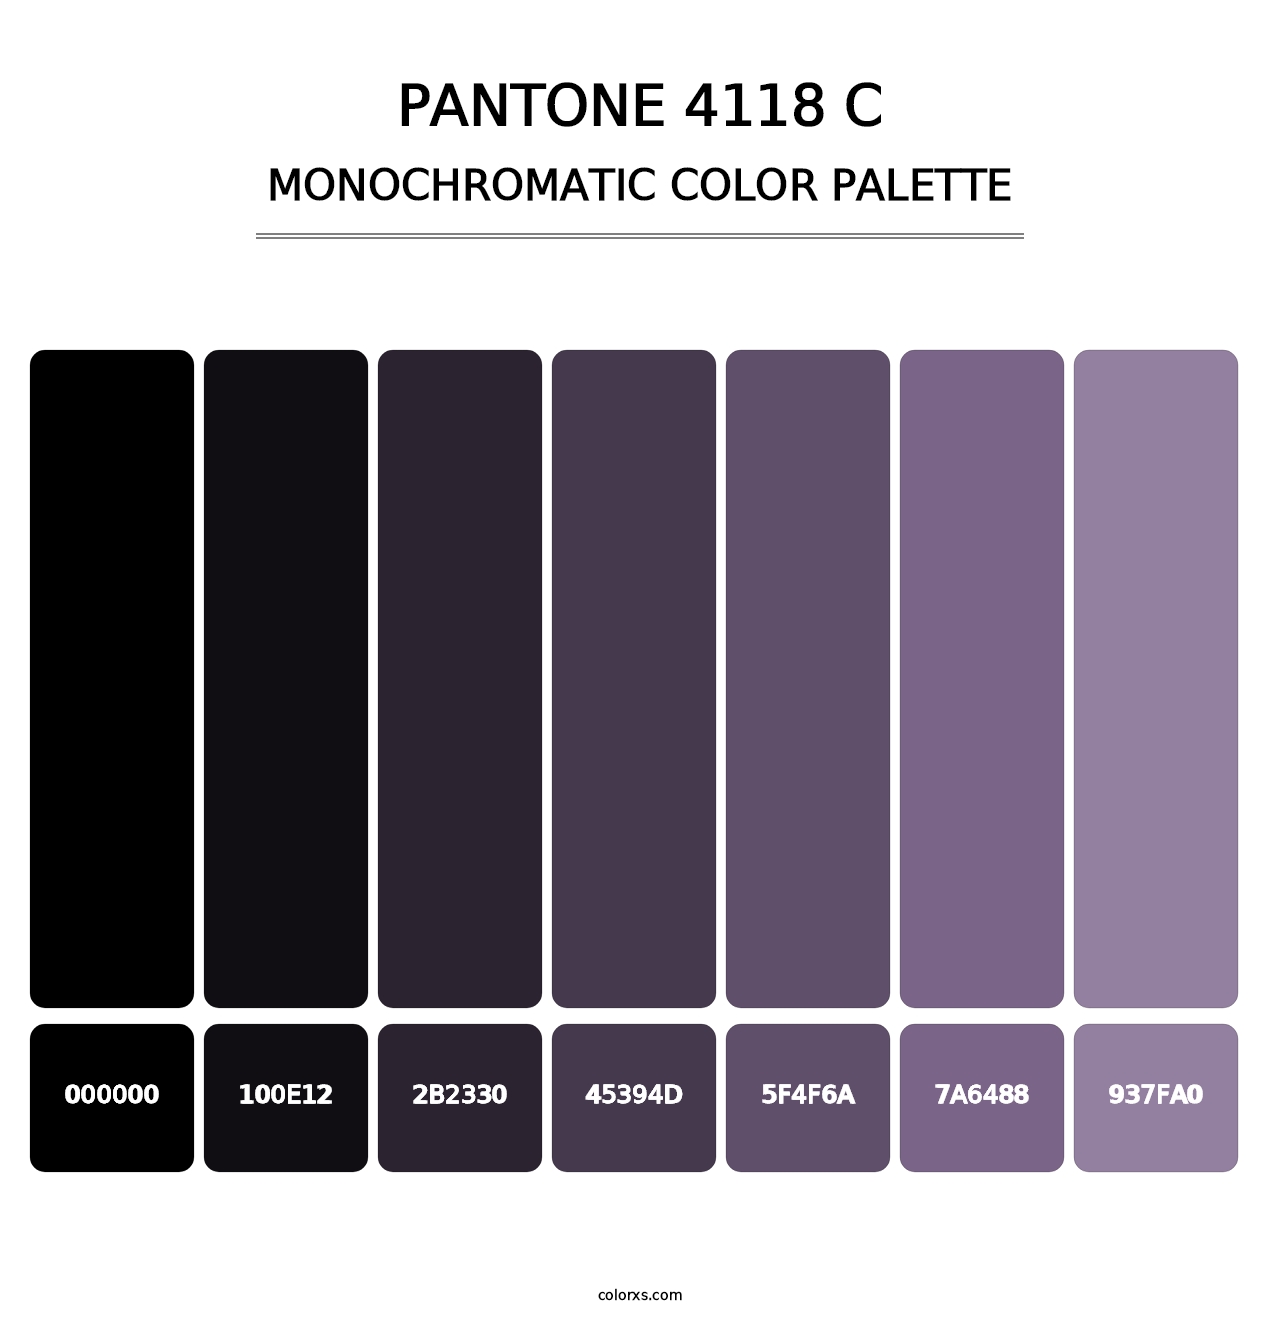 PANTONE 4118 C - Monochromatic Color Palette